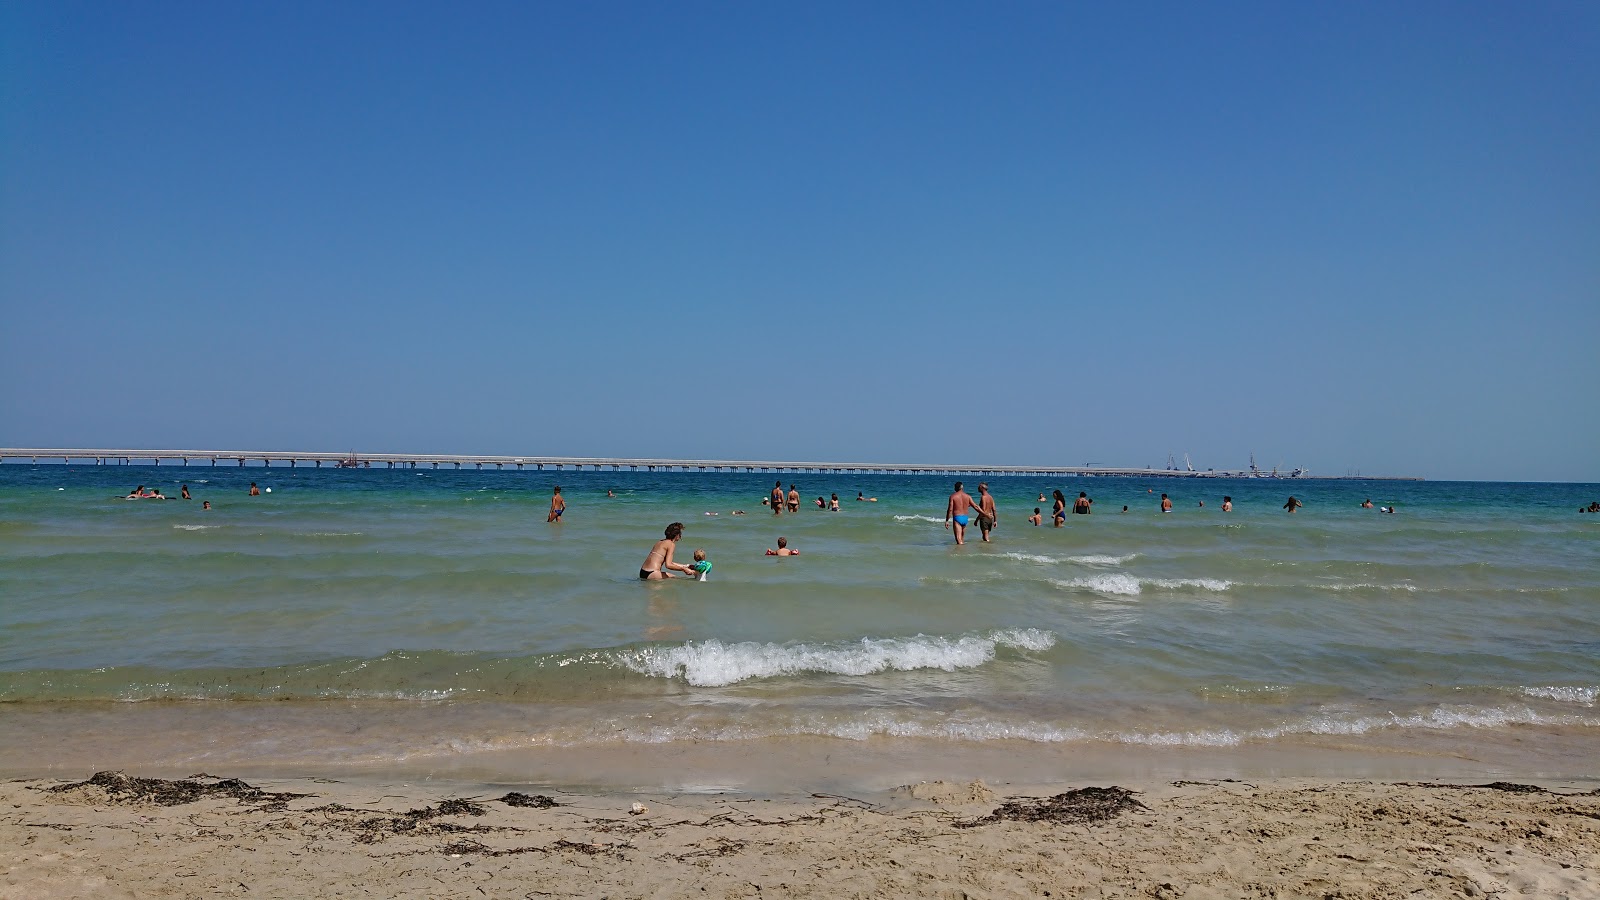 Spiaggia Libera'in fotoğrafı çok temiz temizlik seviyesi ile